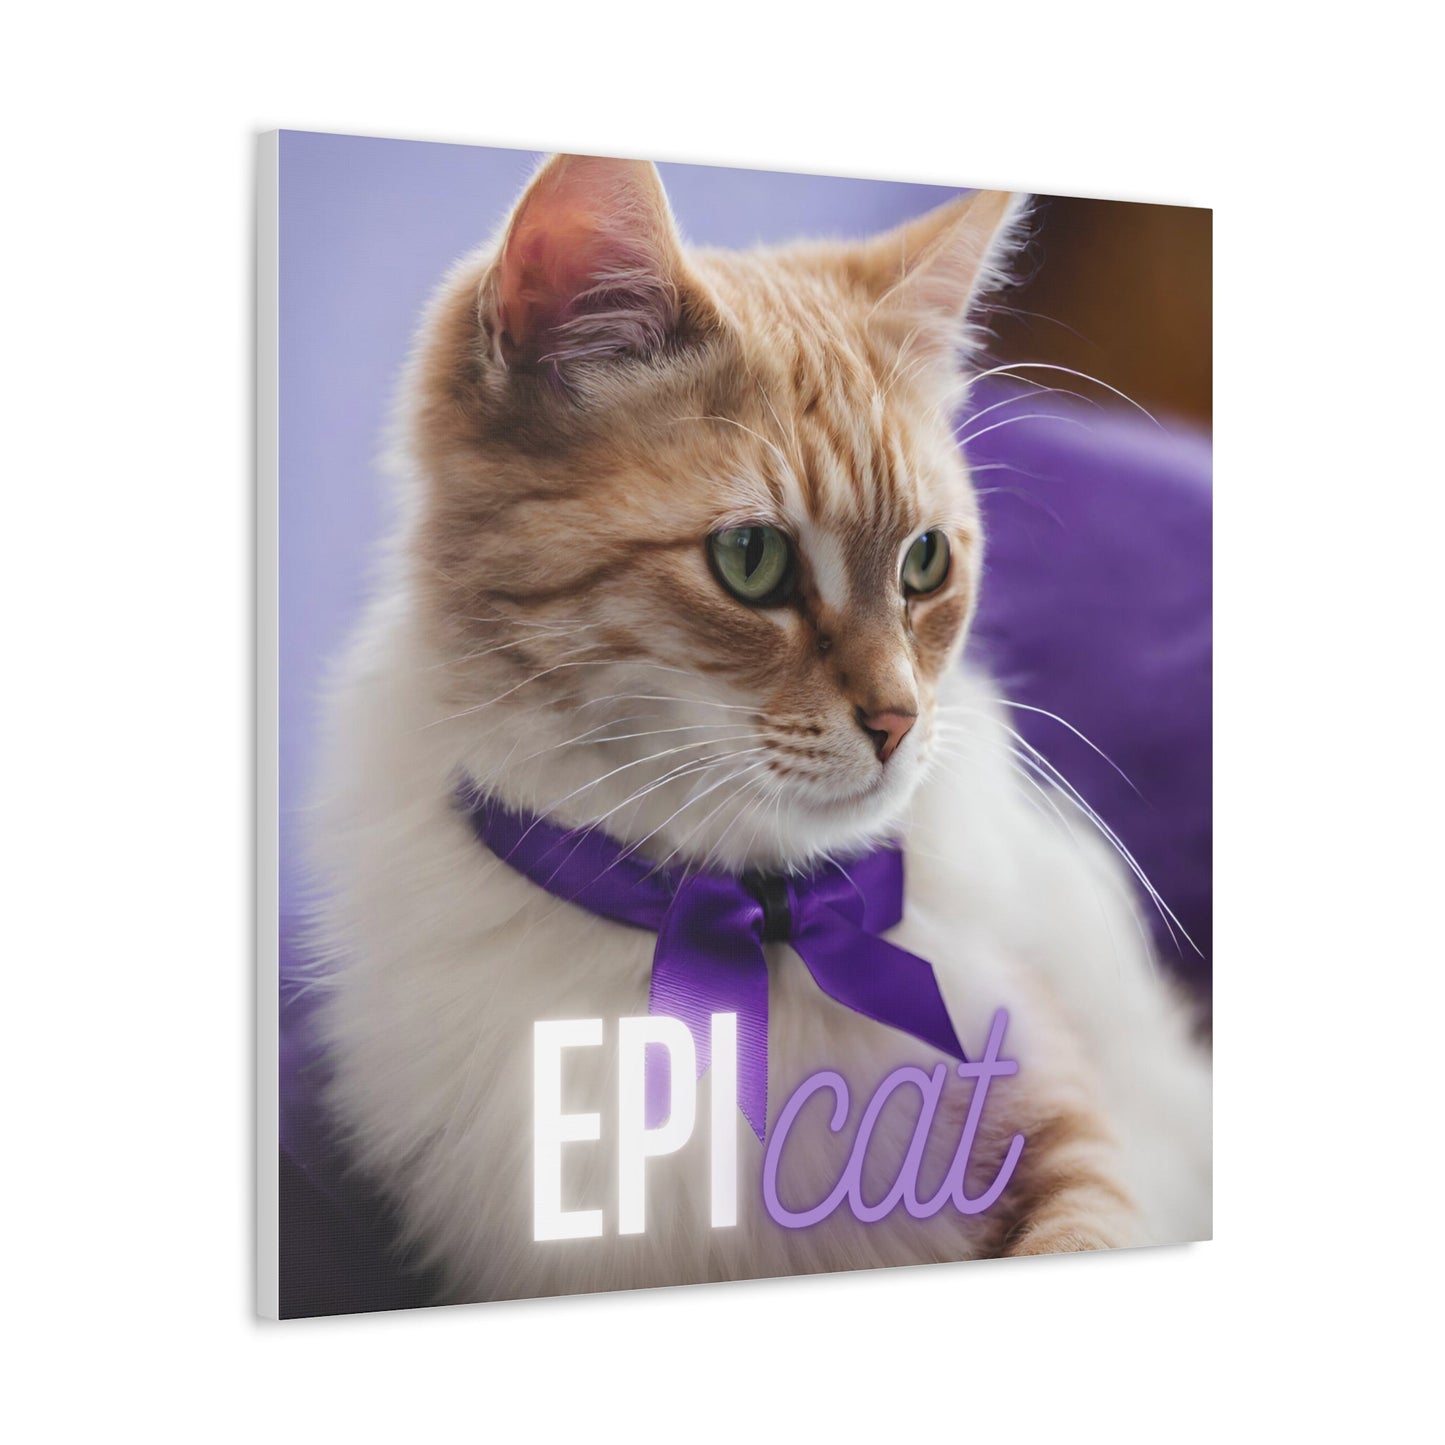 EpiCat Canvas Gallery Wraps - Canvas - Epileptic Al’s Shop